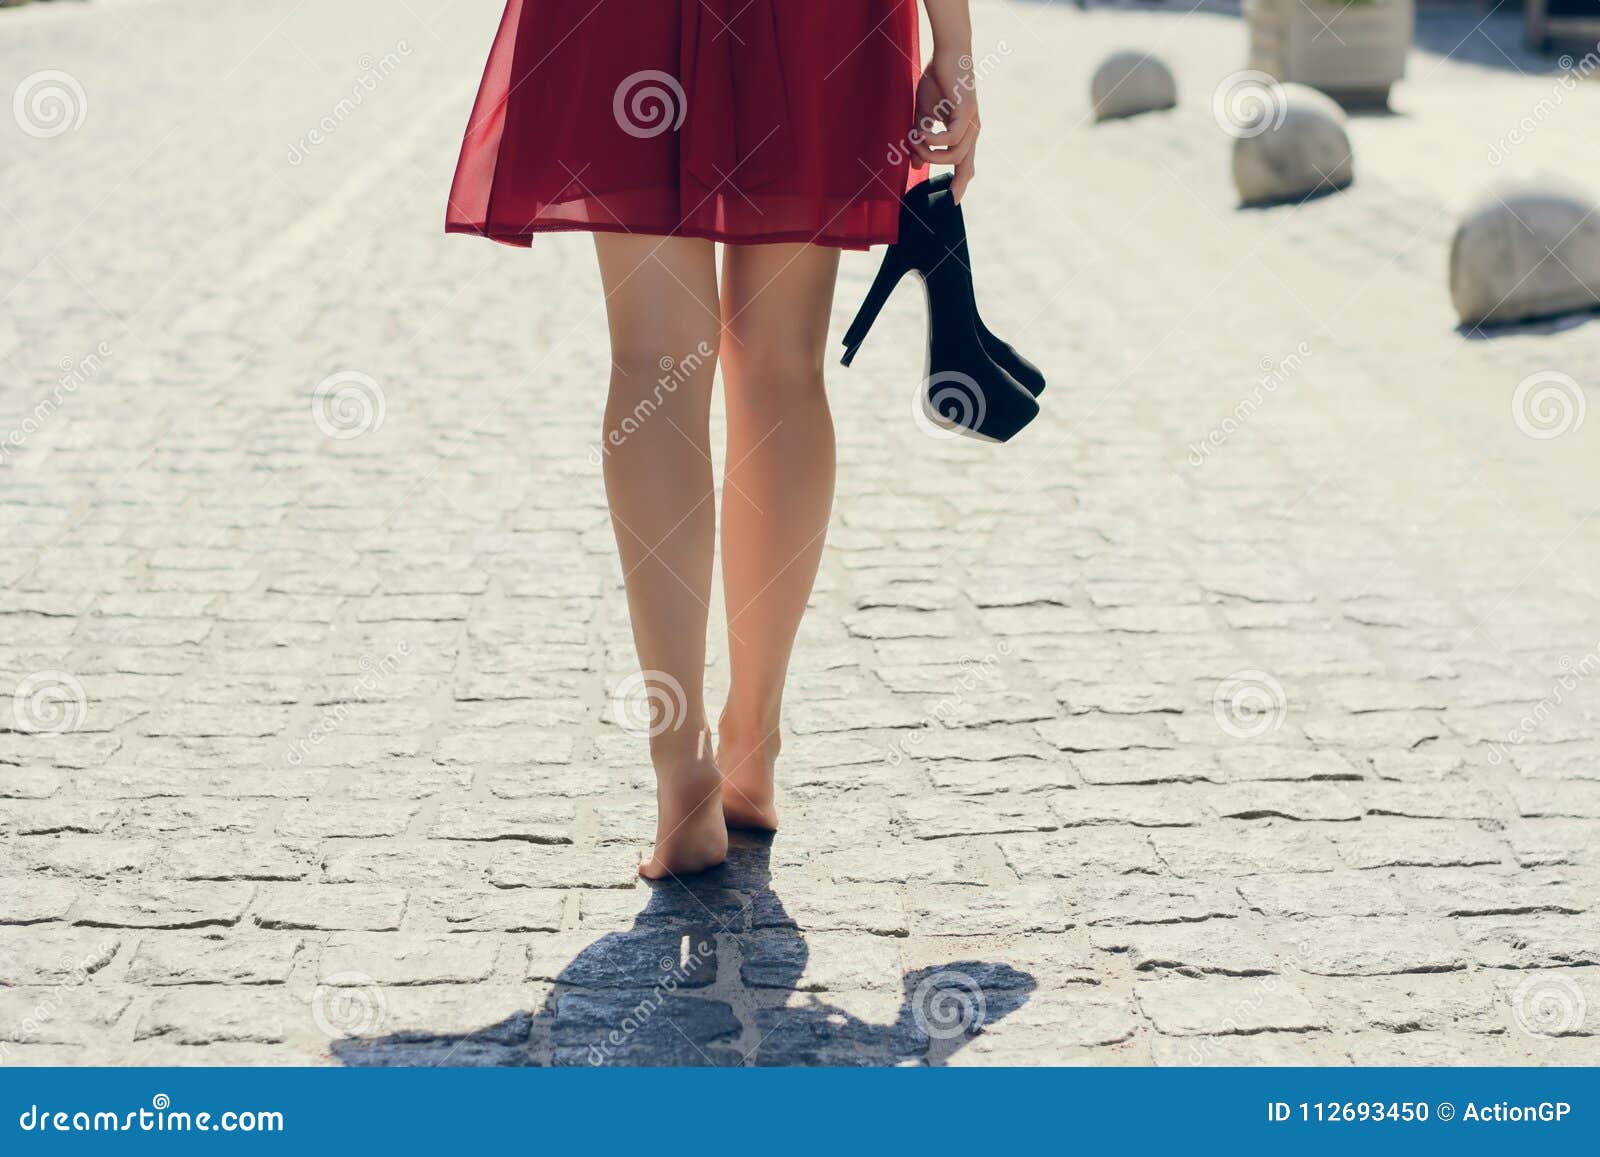 Топоча каблуками по пустынной палубе поспешно бегу. Девушка с туфлями в руках. Босая девушка с туфлями в руках. Девушка в платье босиком. Босиком туфли в руках.